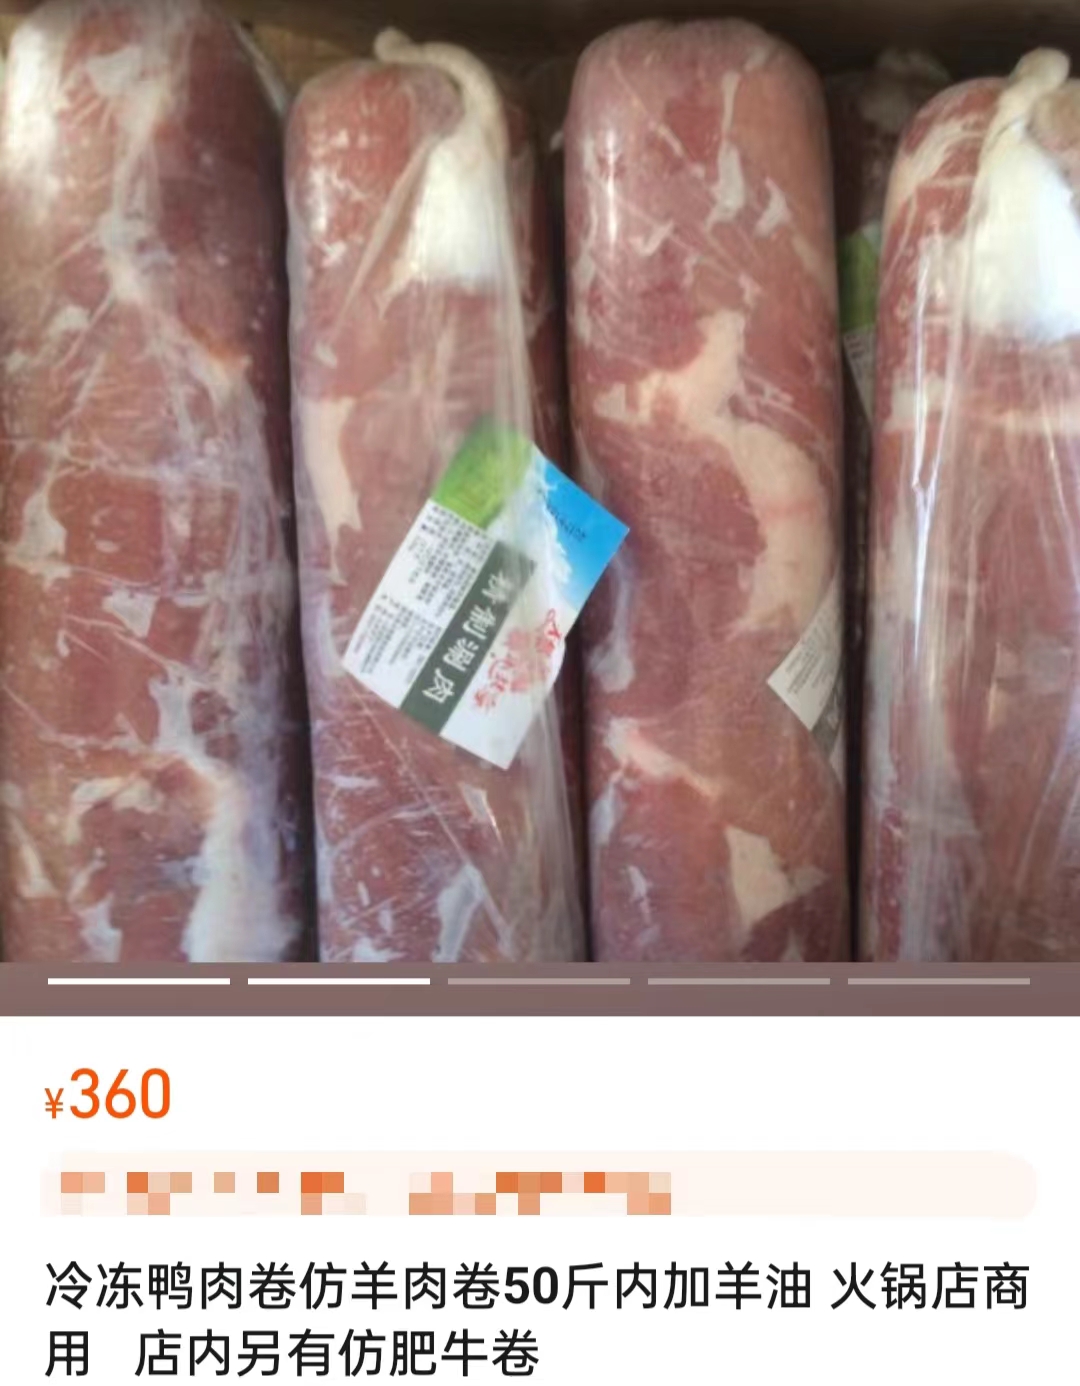 电商平台上售卖的鸭肉制混合肉卷。